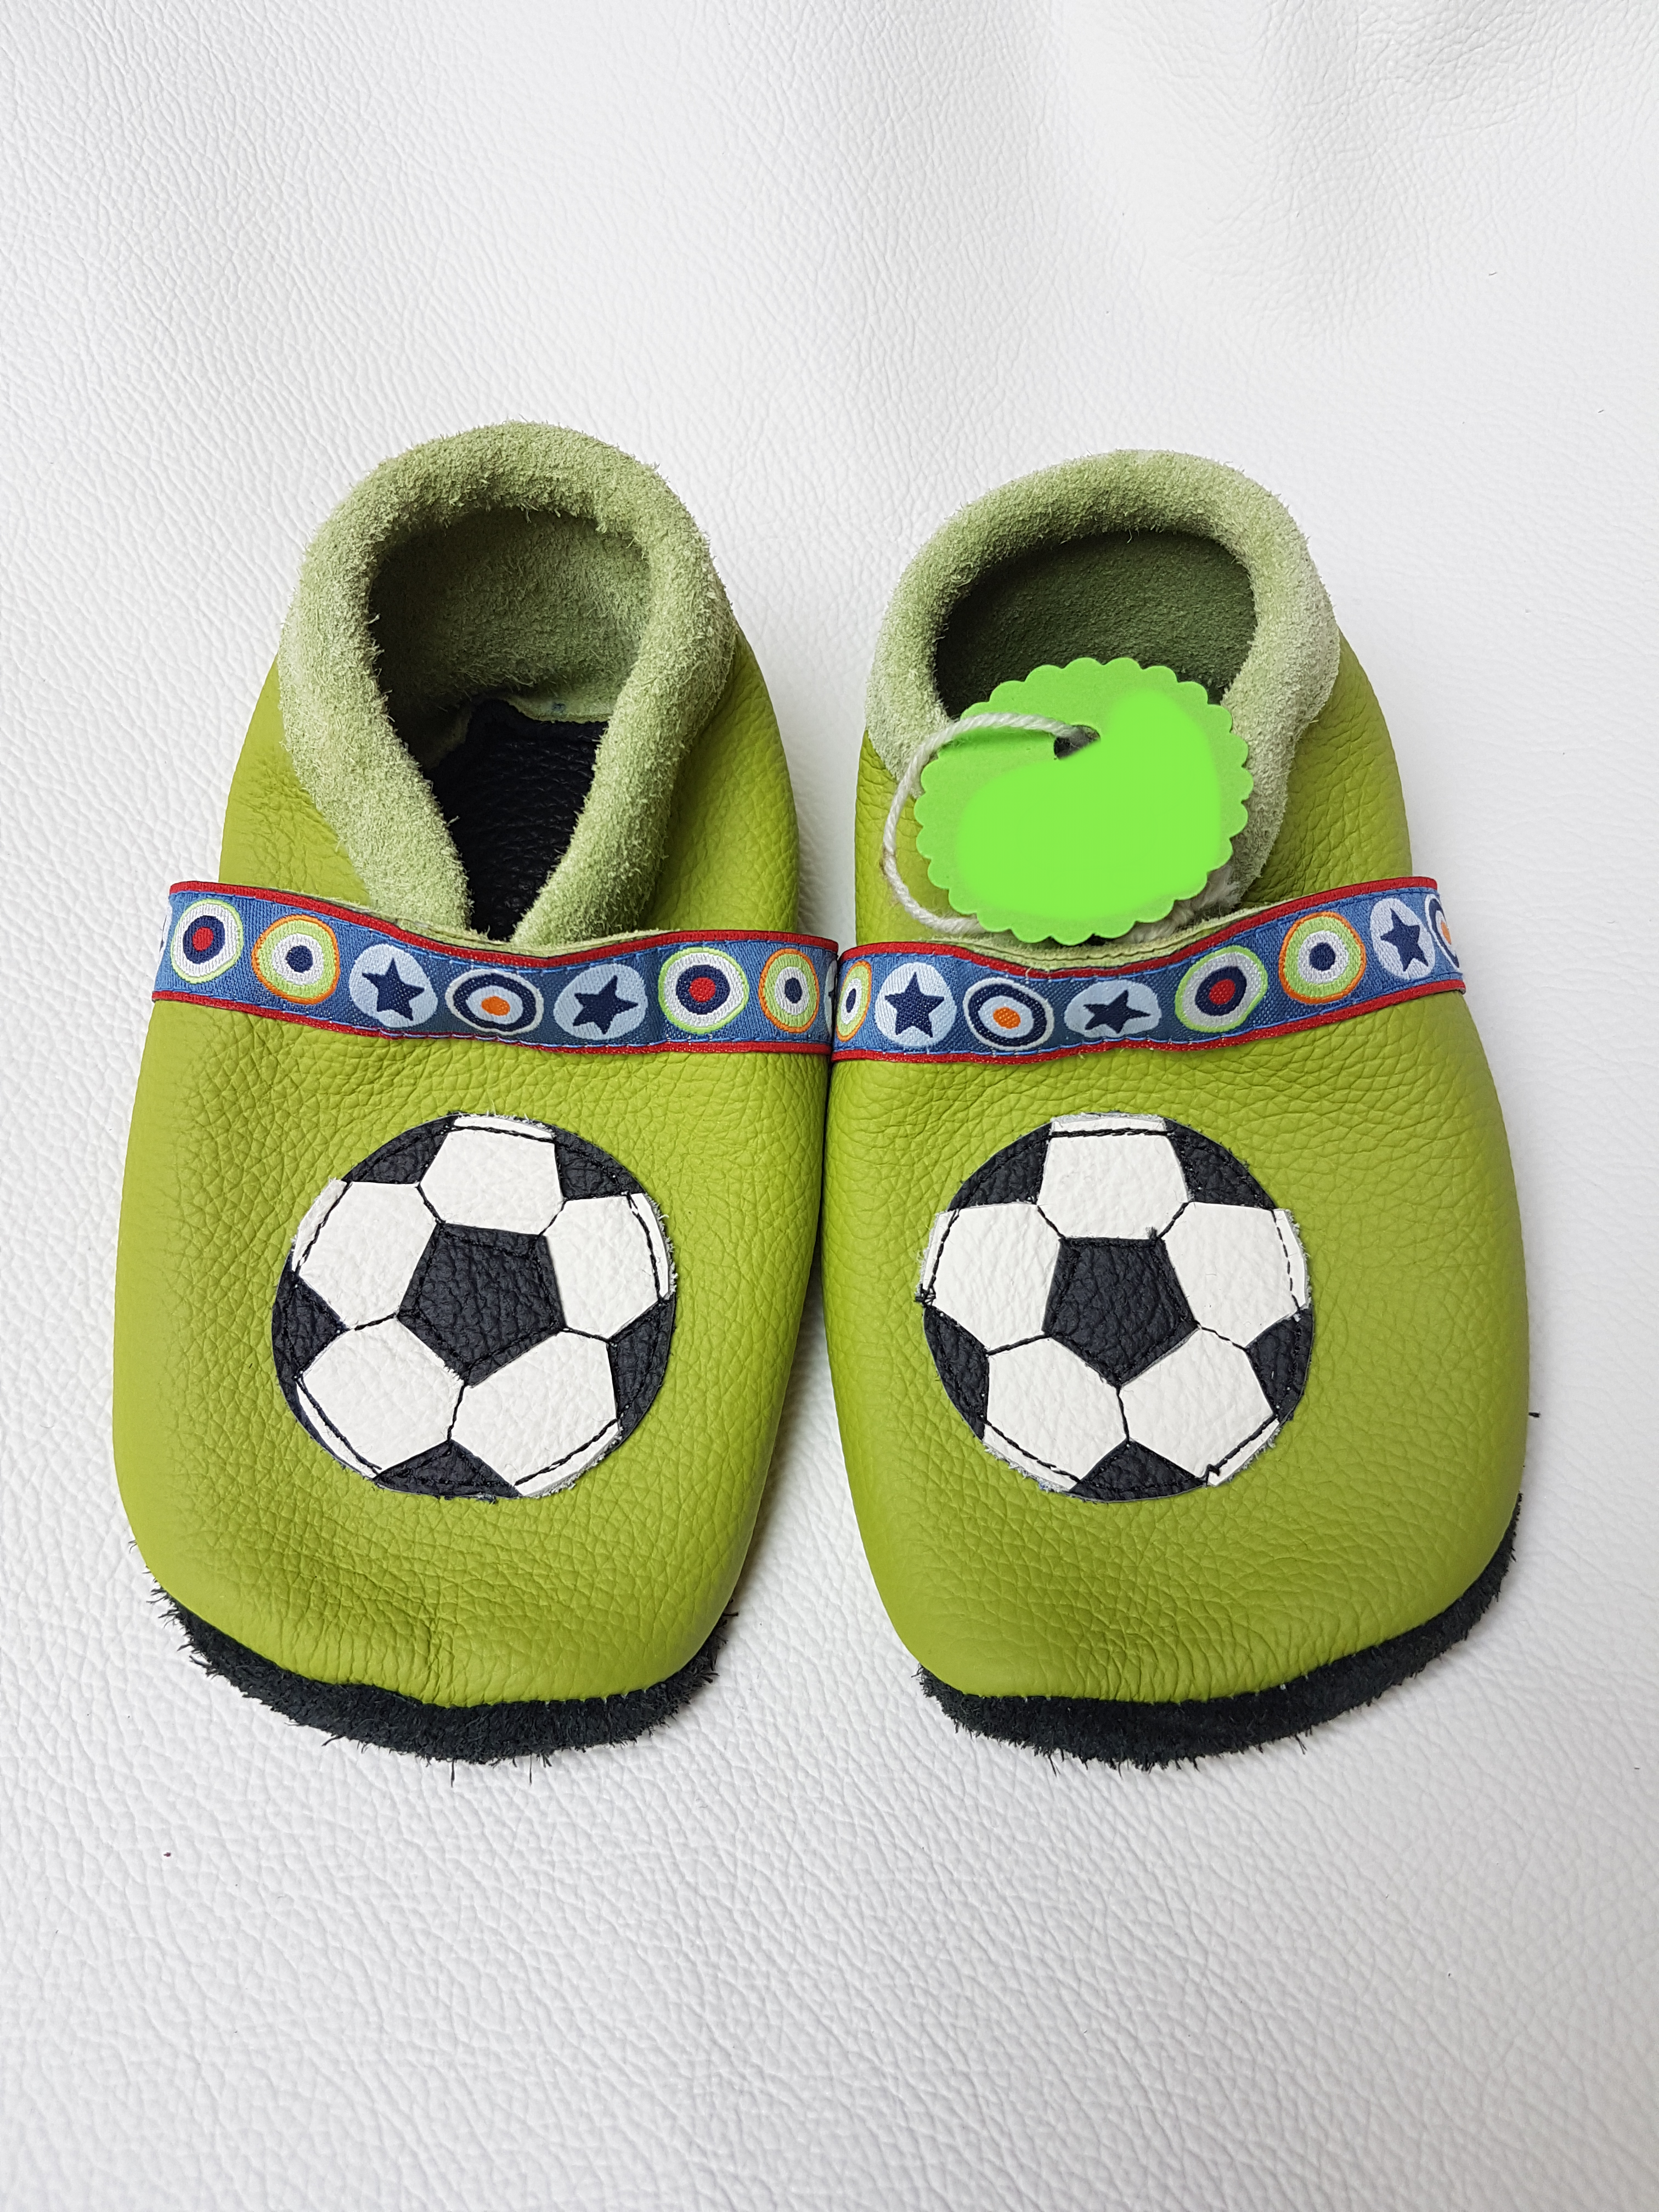 Fußball, Schuh mit Fußball, Babyschuh mit Fußball